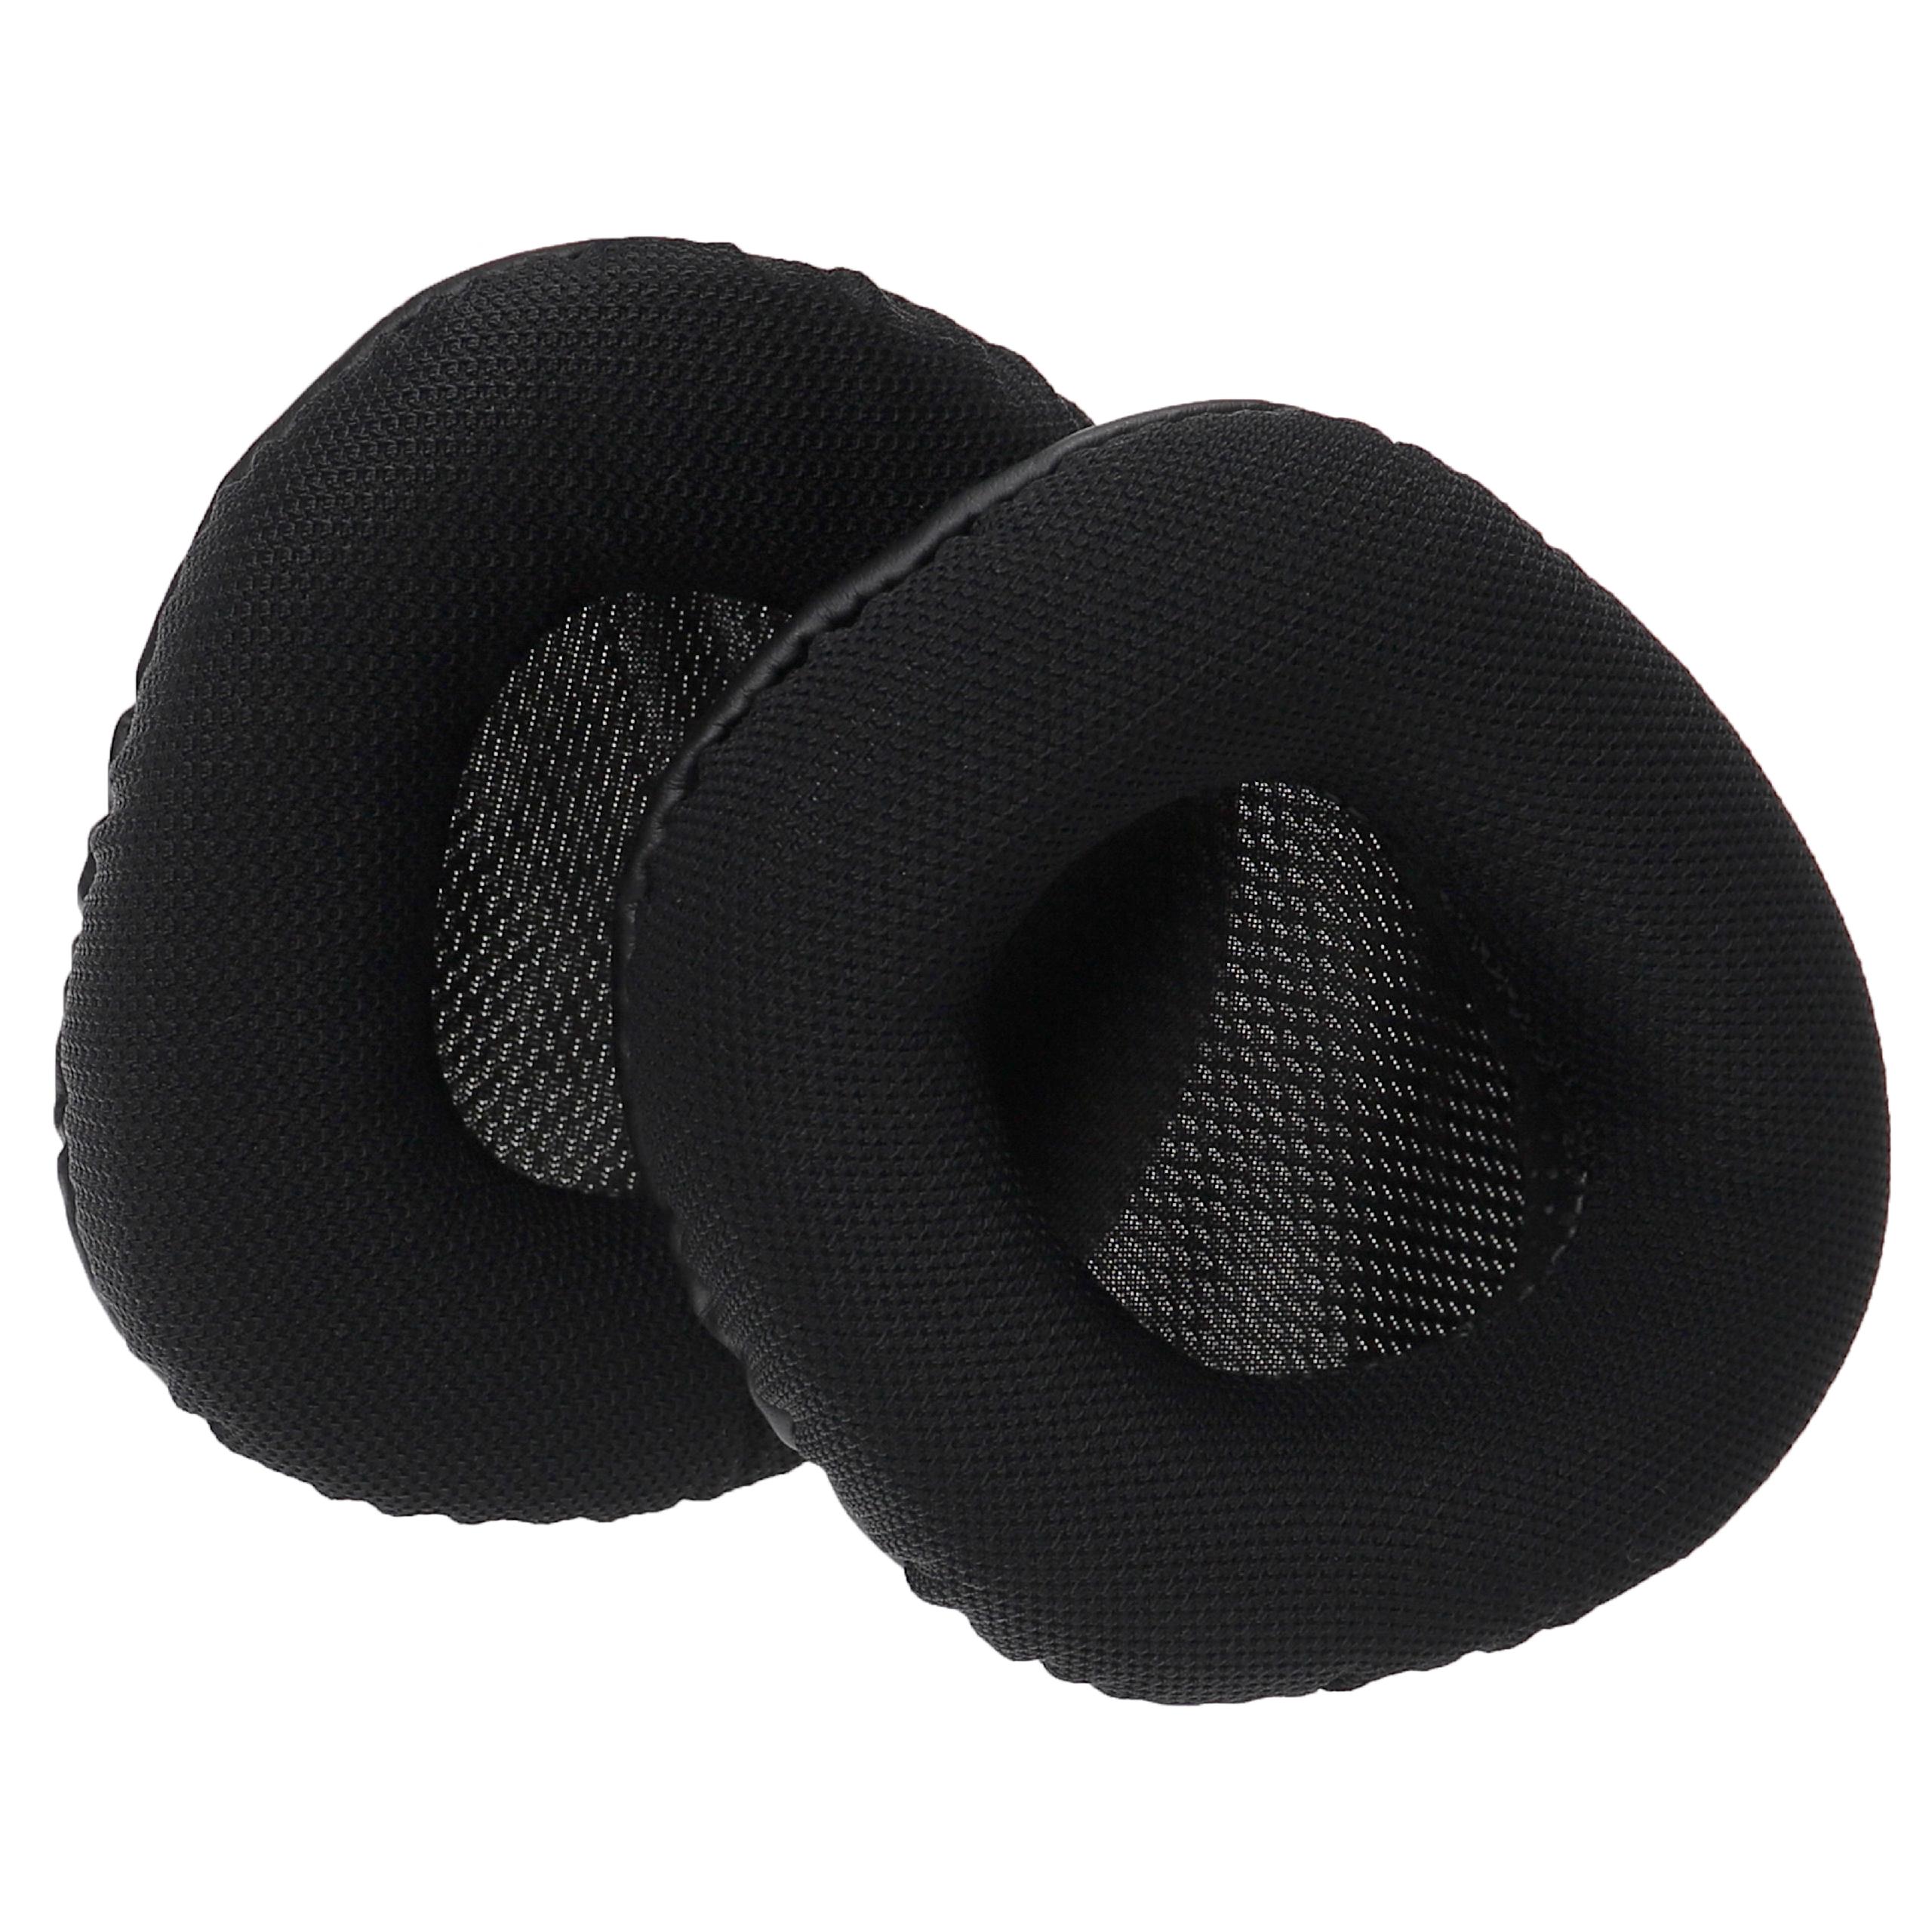 Ohrenpolster passend für Corsair Void Pro RGB Kopfhörer u.a. - , 10,5 x 8,7 cm, Schwarz